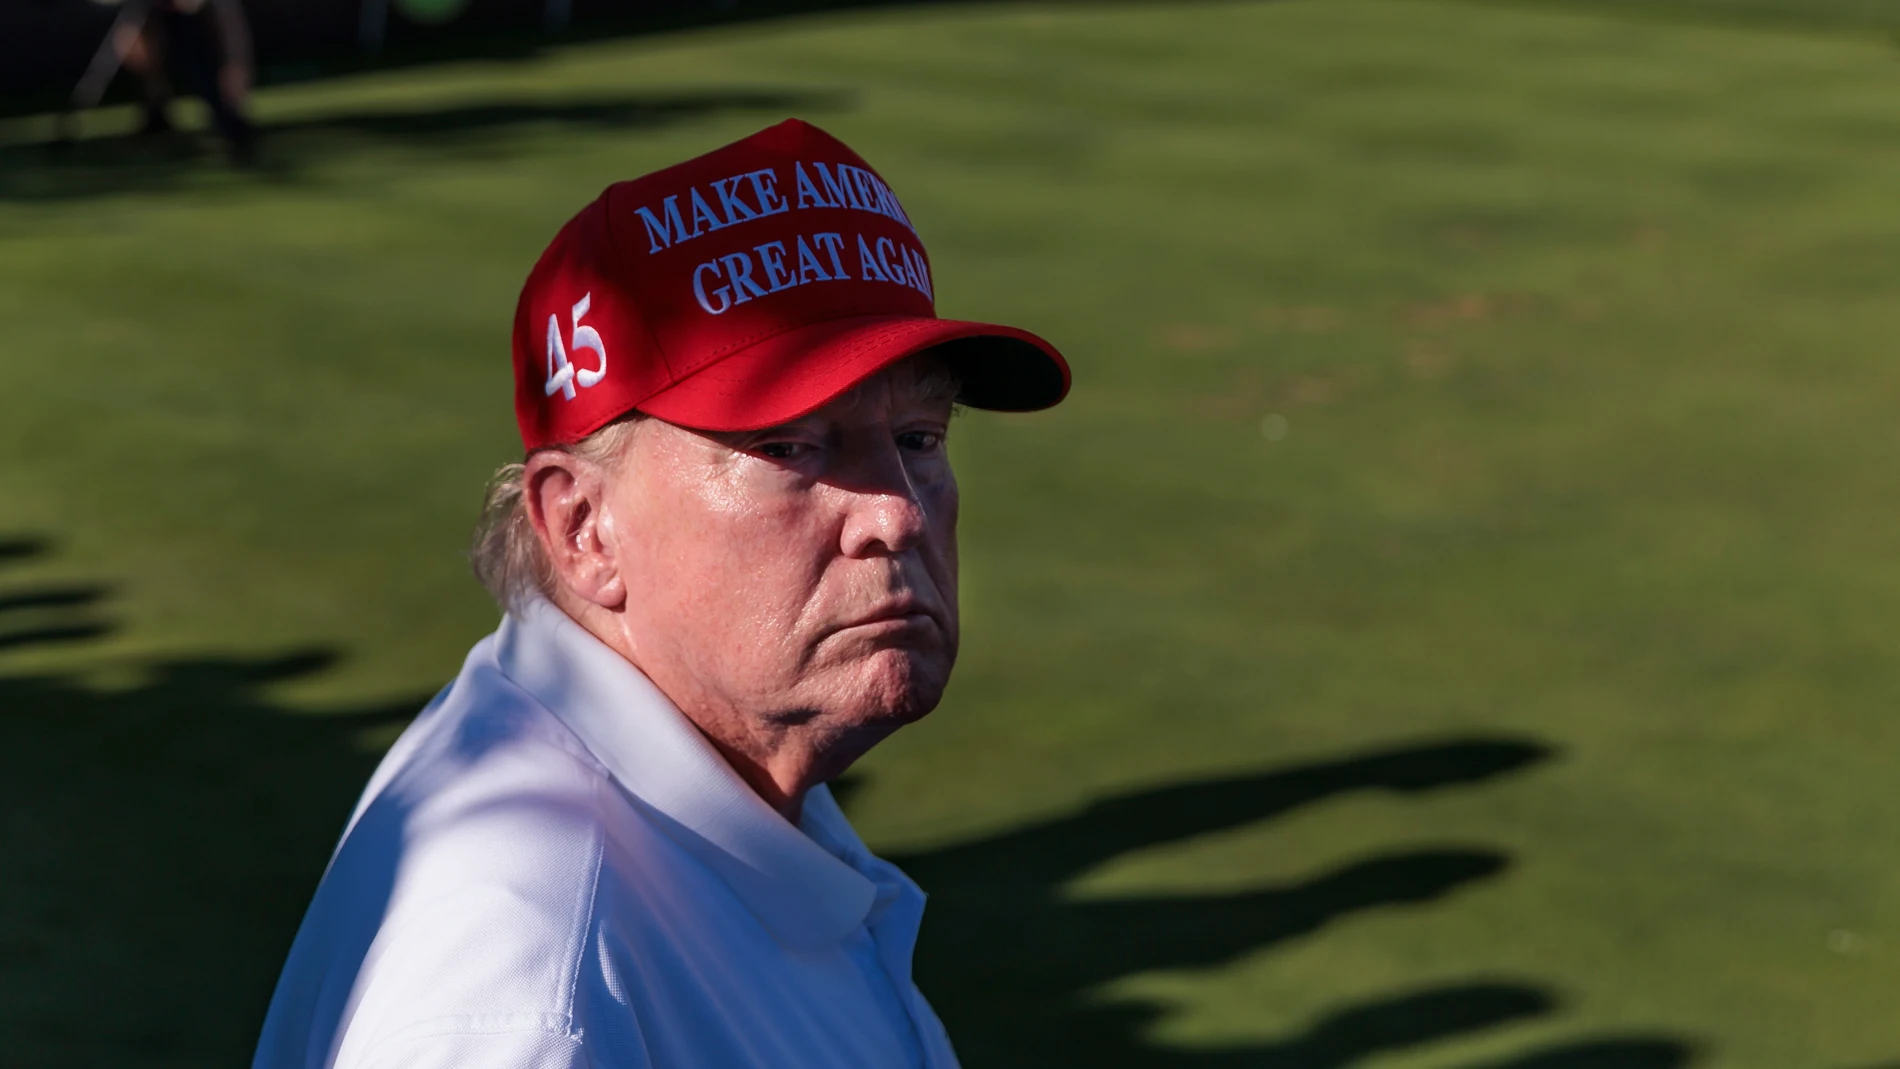 El expresidente Donald Trump en el torneo de golf en Nueva Jersey.